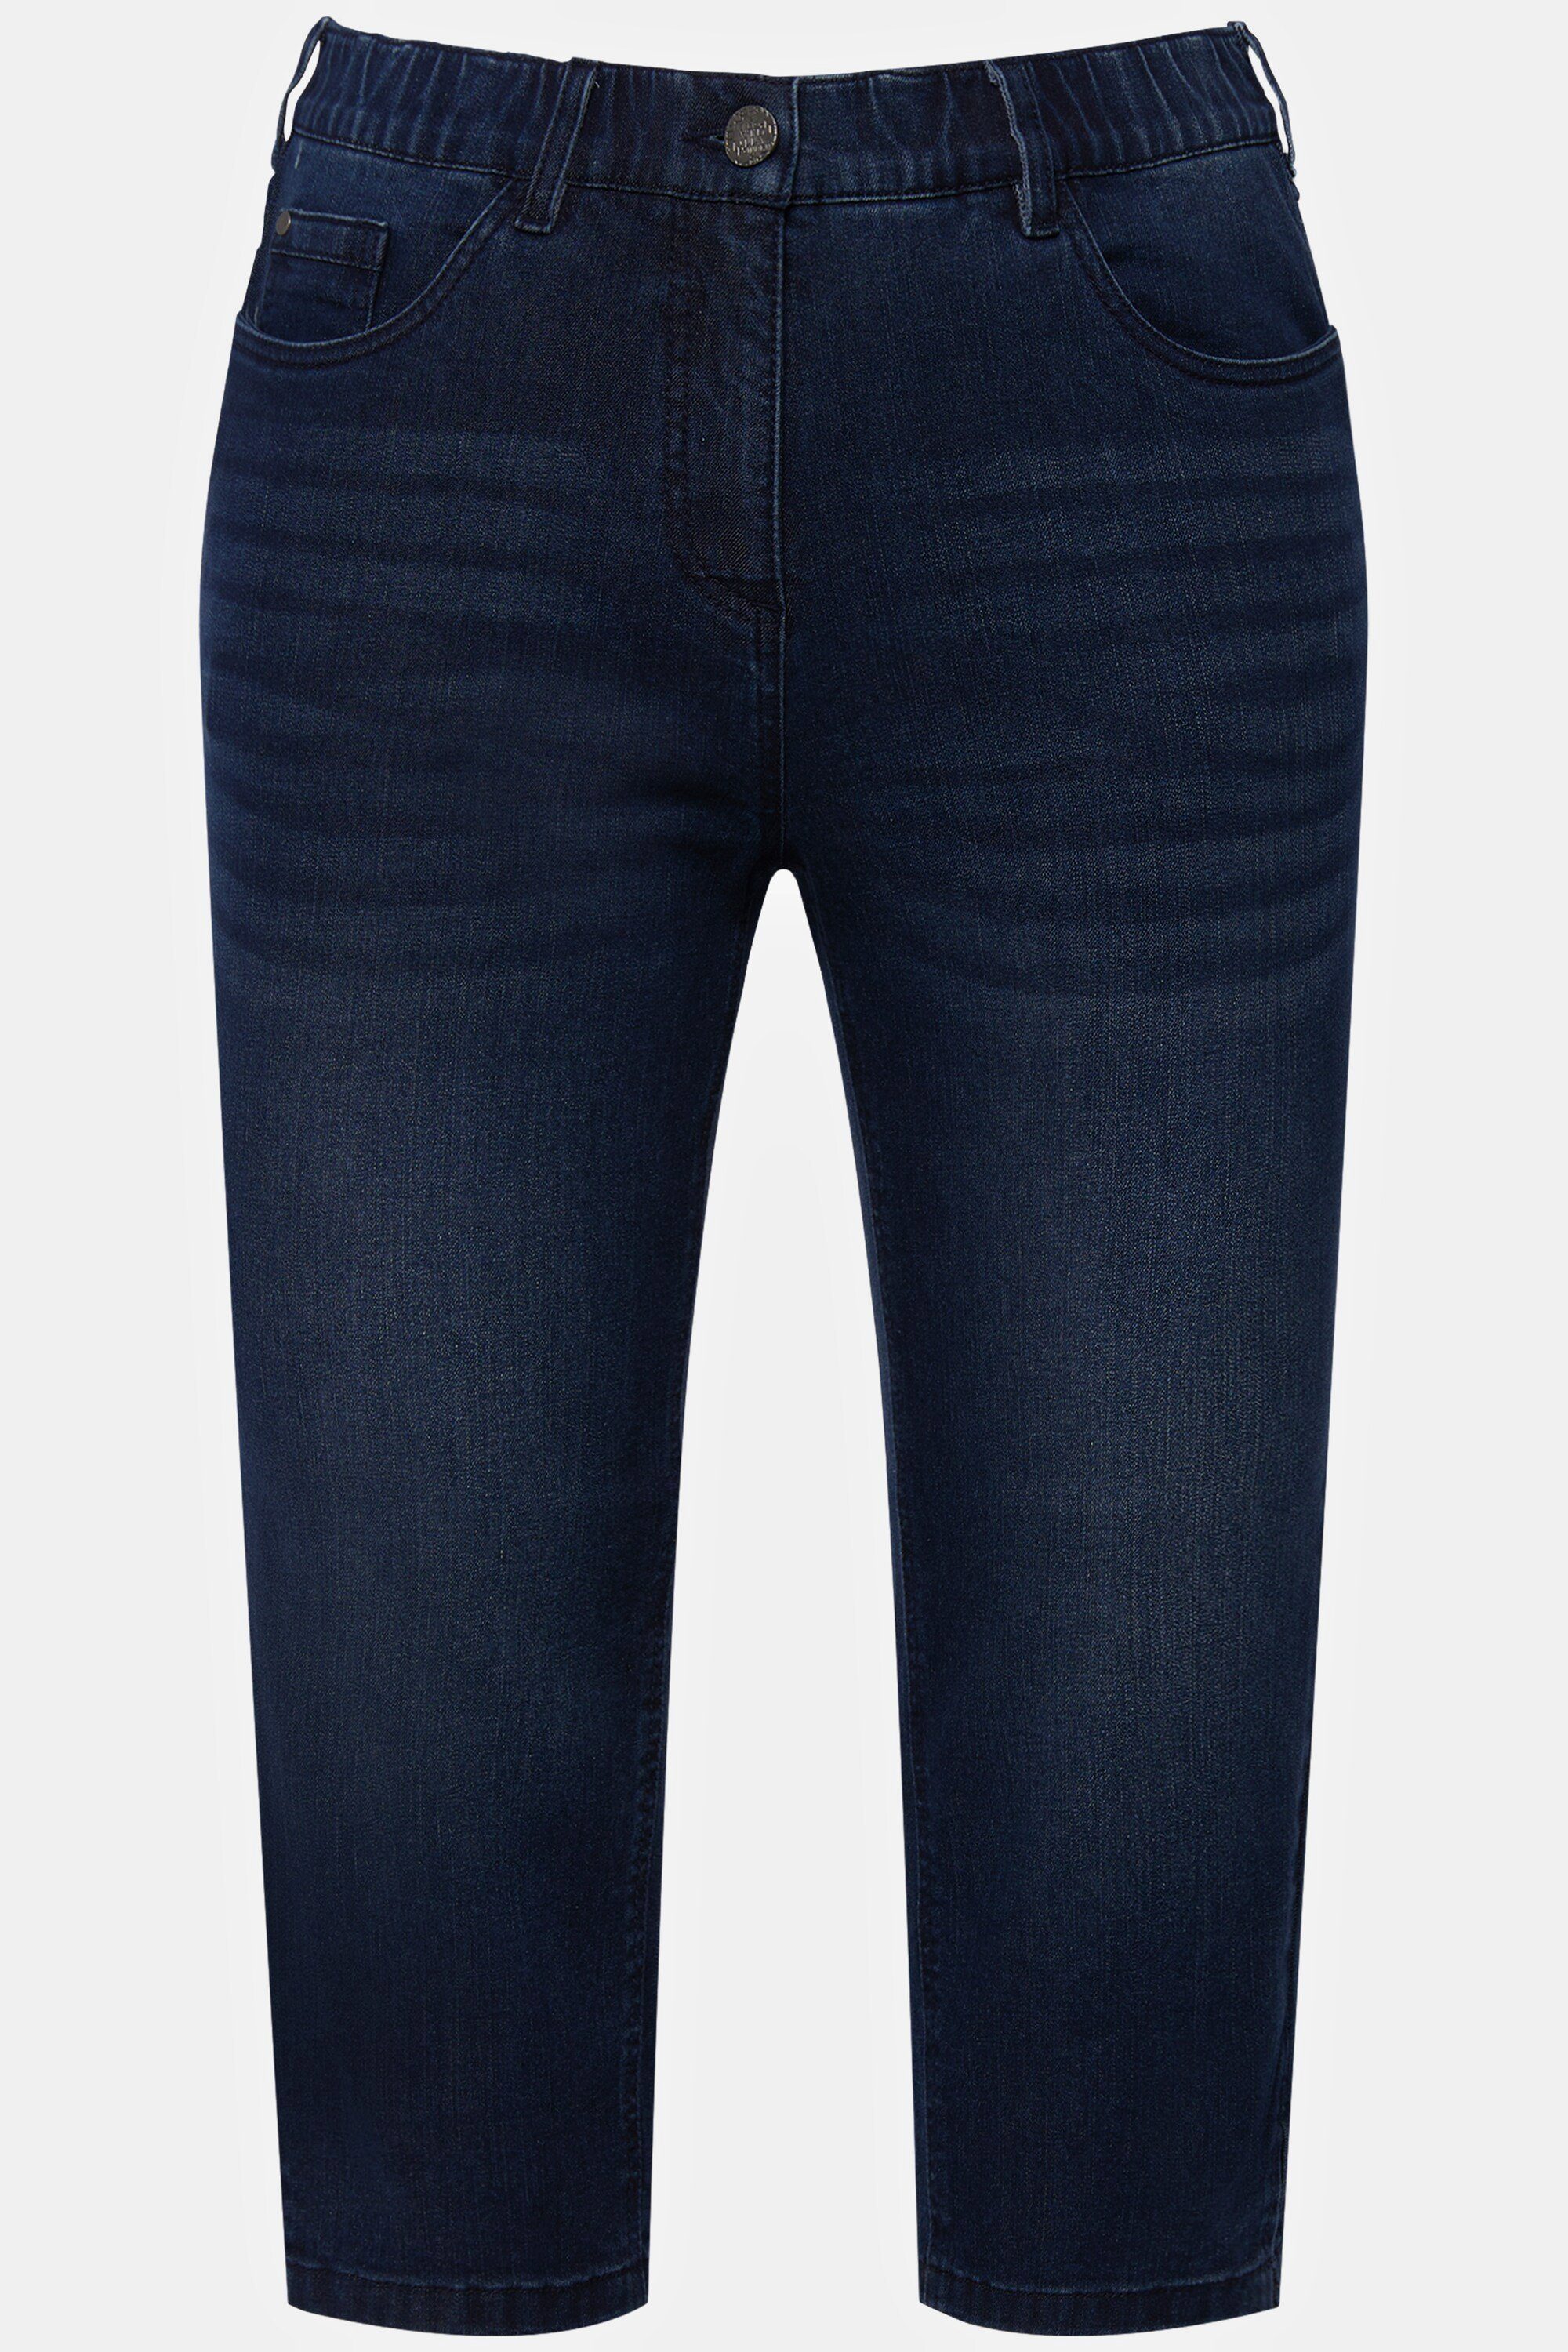 Ulla Popken Funktionshose denim schmale Sarah Capri Jeans blue 5-Pocket-Form